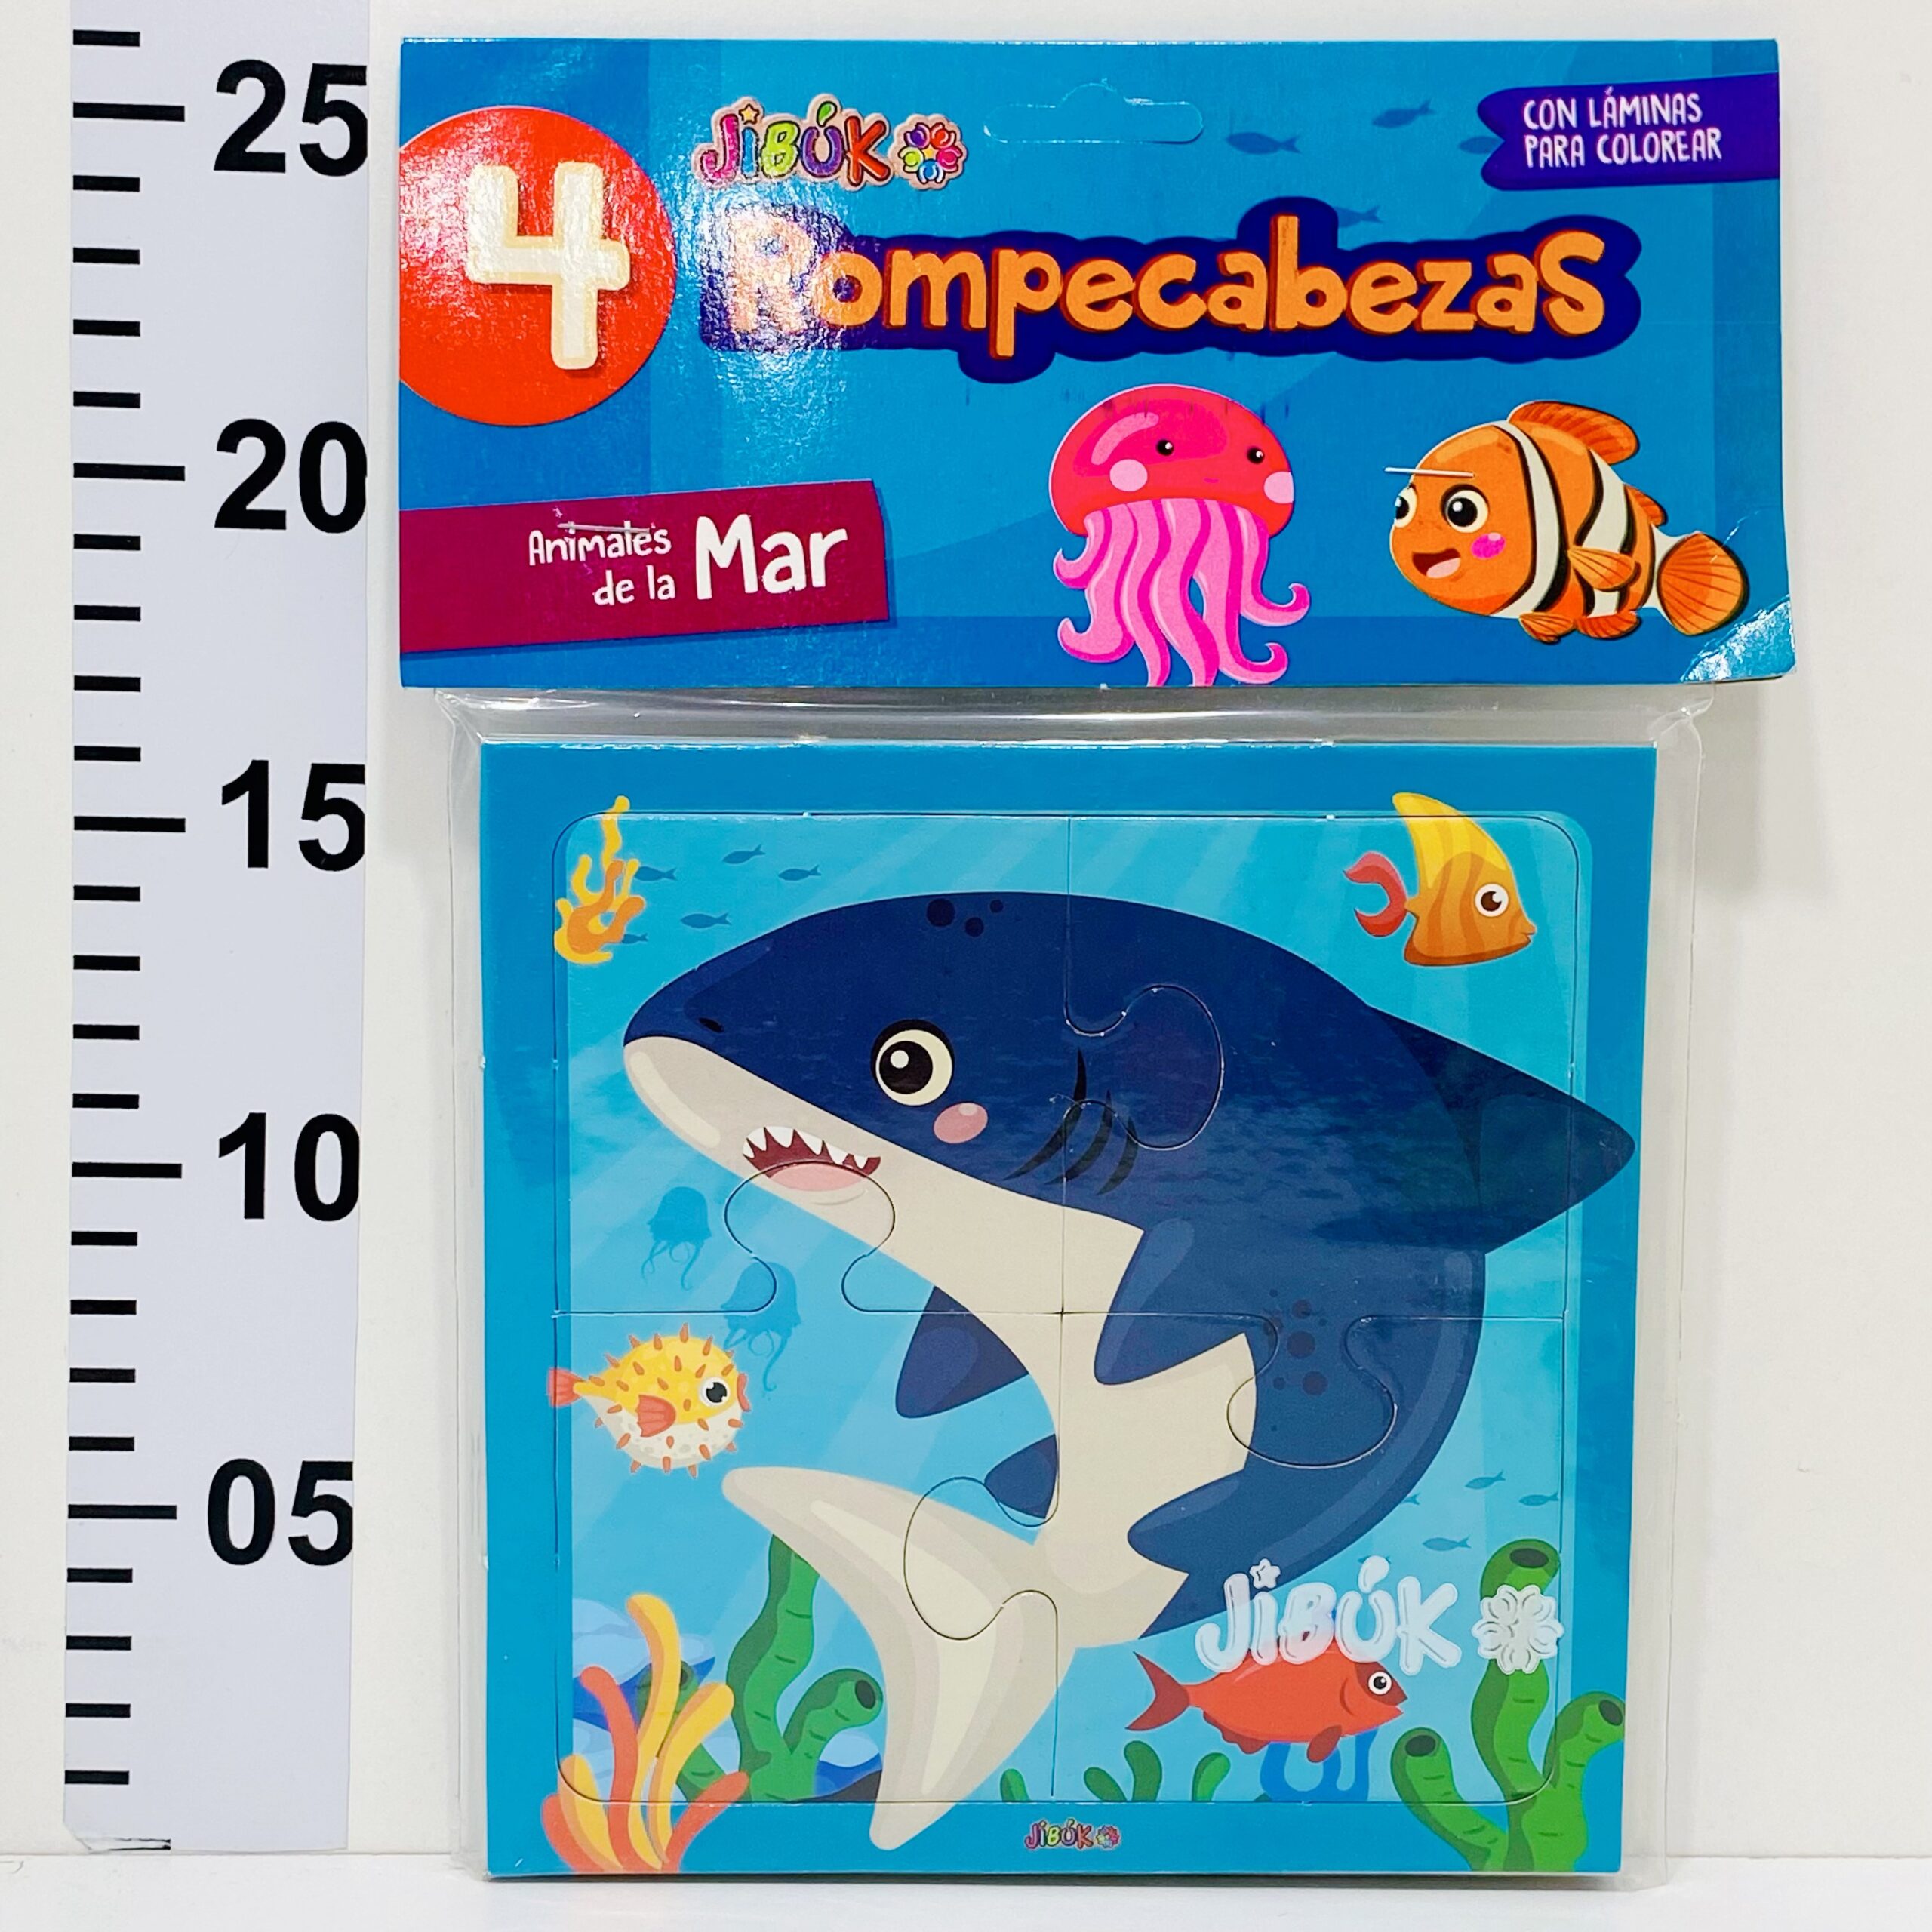 4 mini puzzles jibuk de animales de mar x 4 pzas. cada uno 